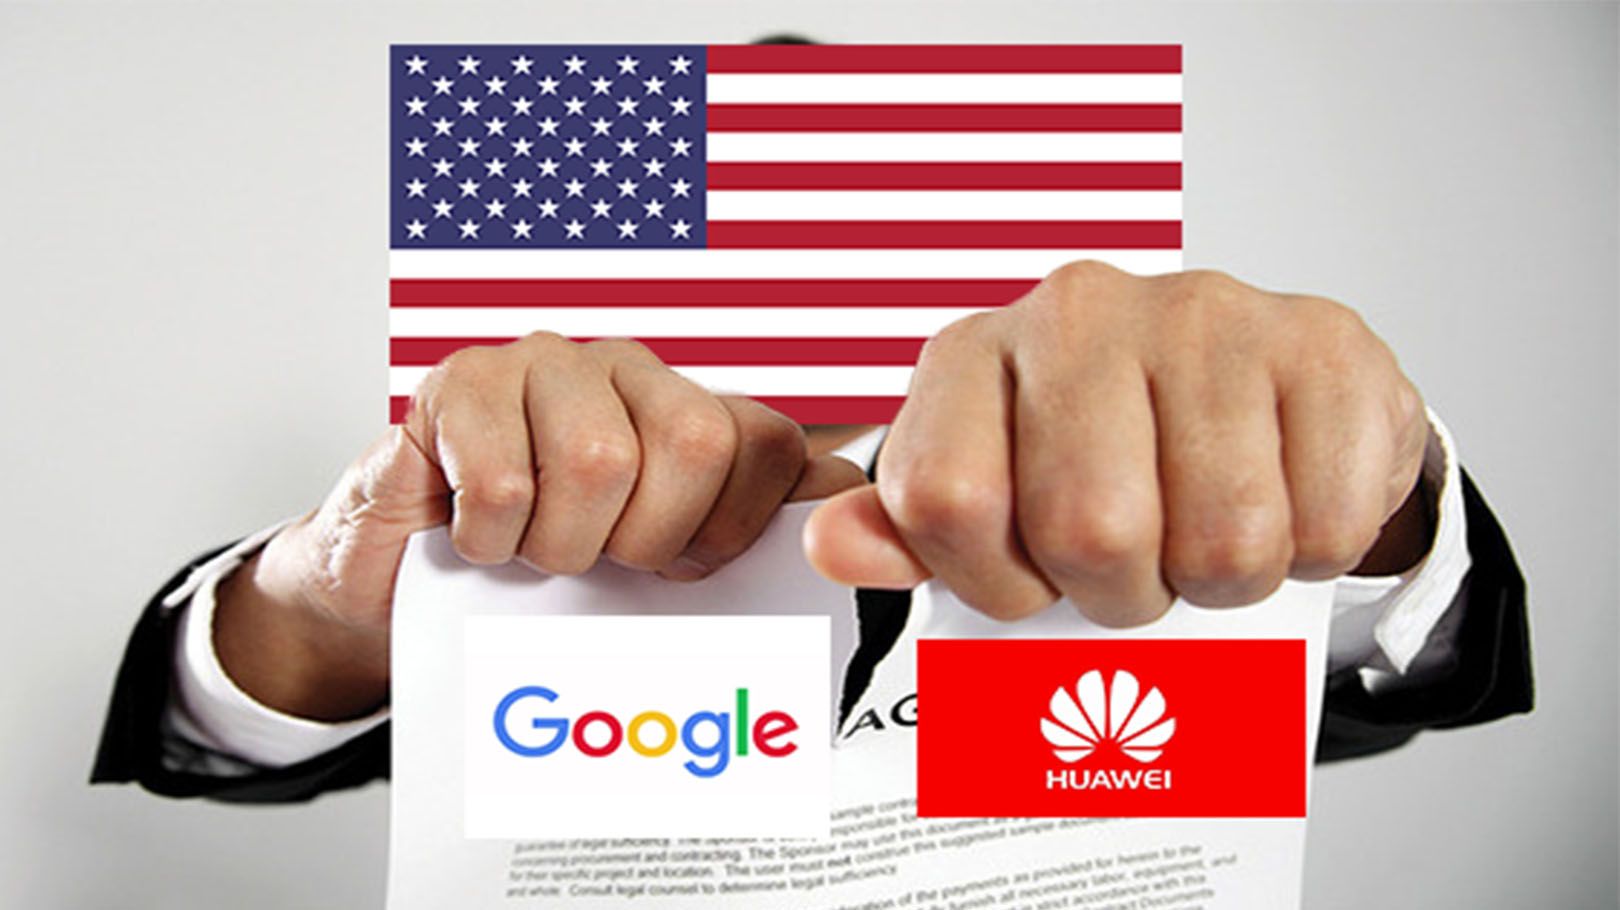 Huawei โดนอีก ทางการสหรัฐฯ ร่อนจดหมายให้ Google พิจารณาความร่วมมือใหม่